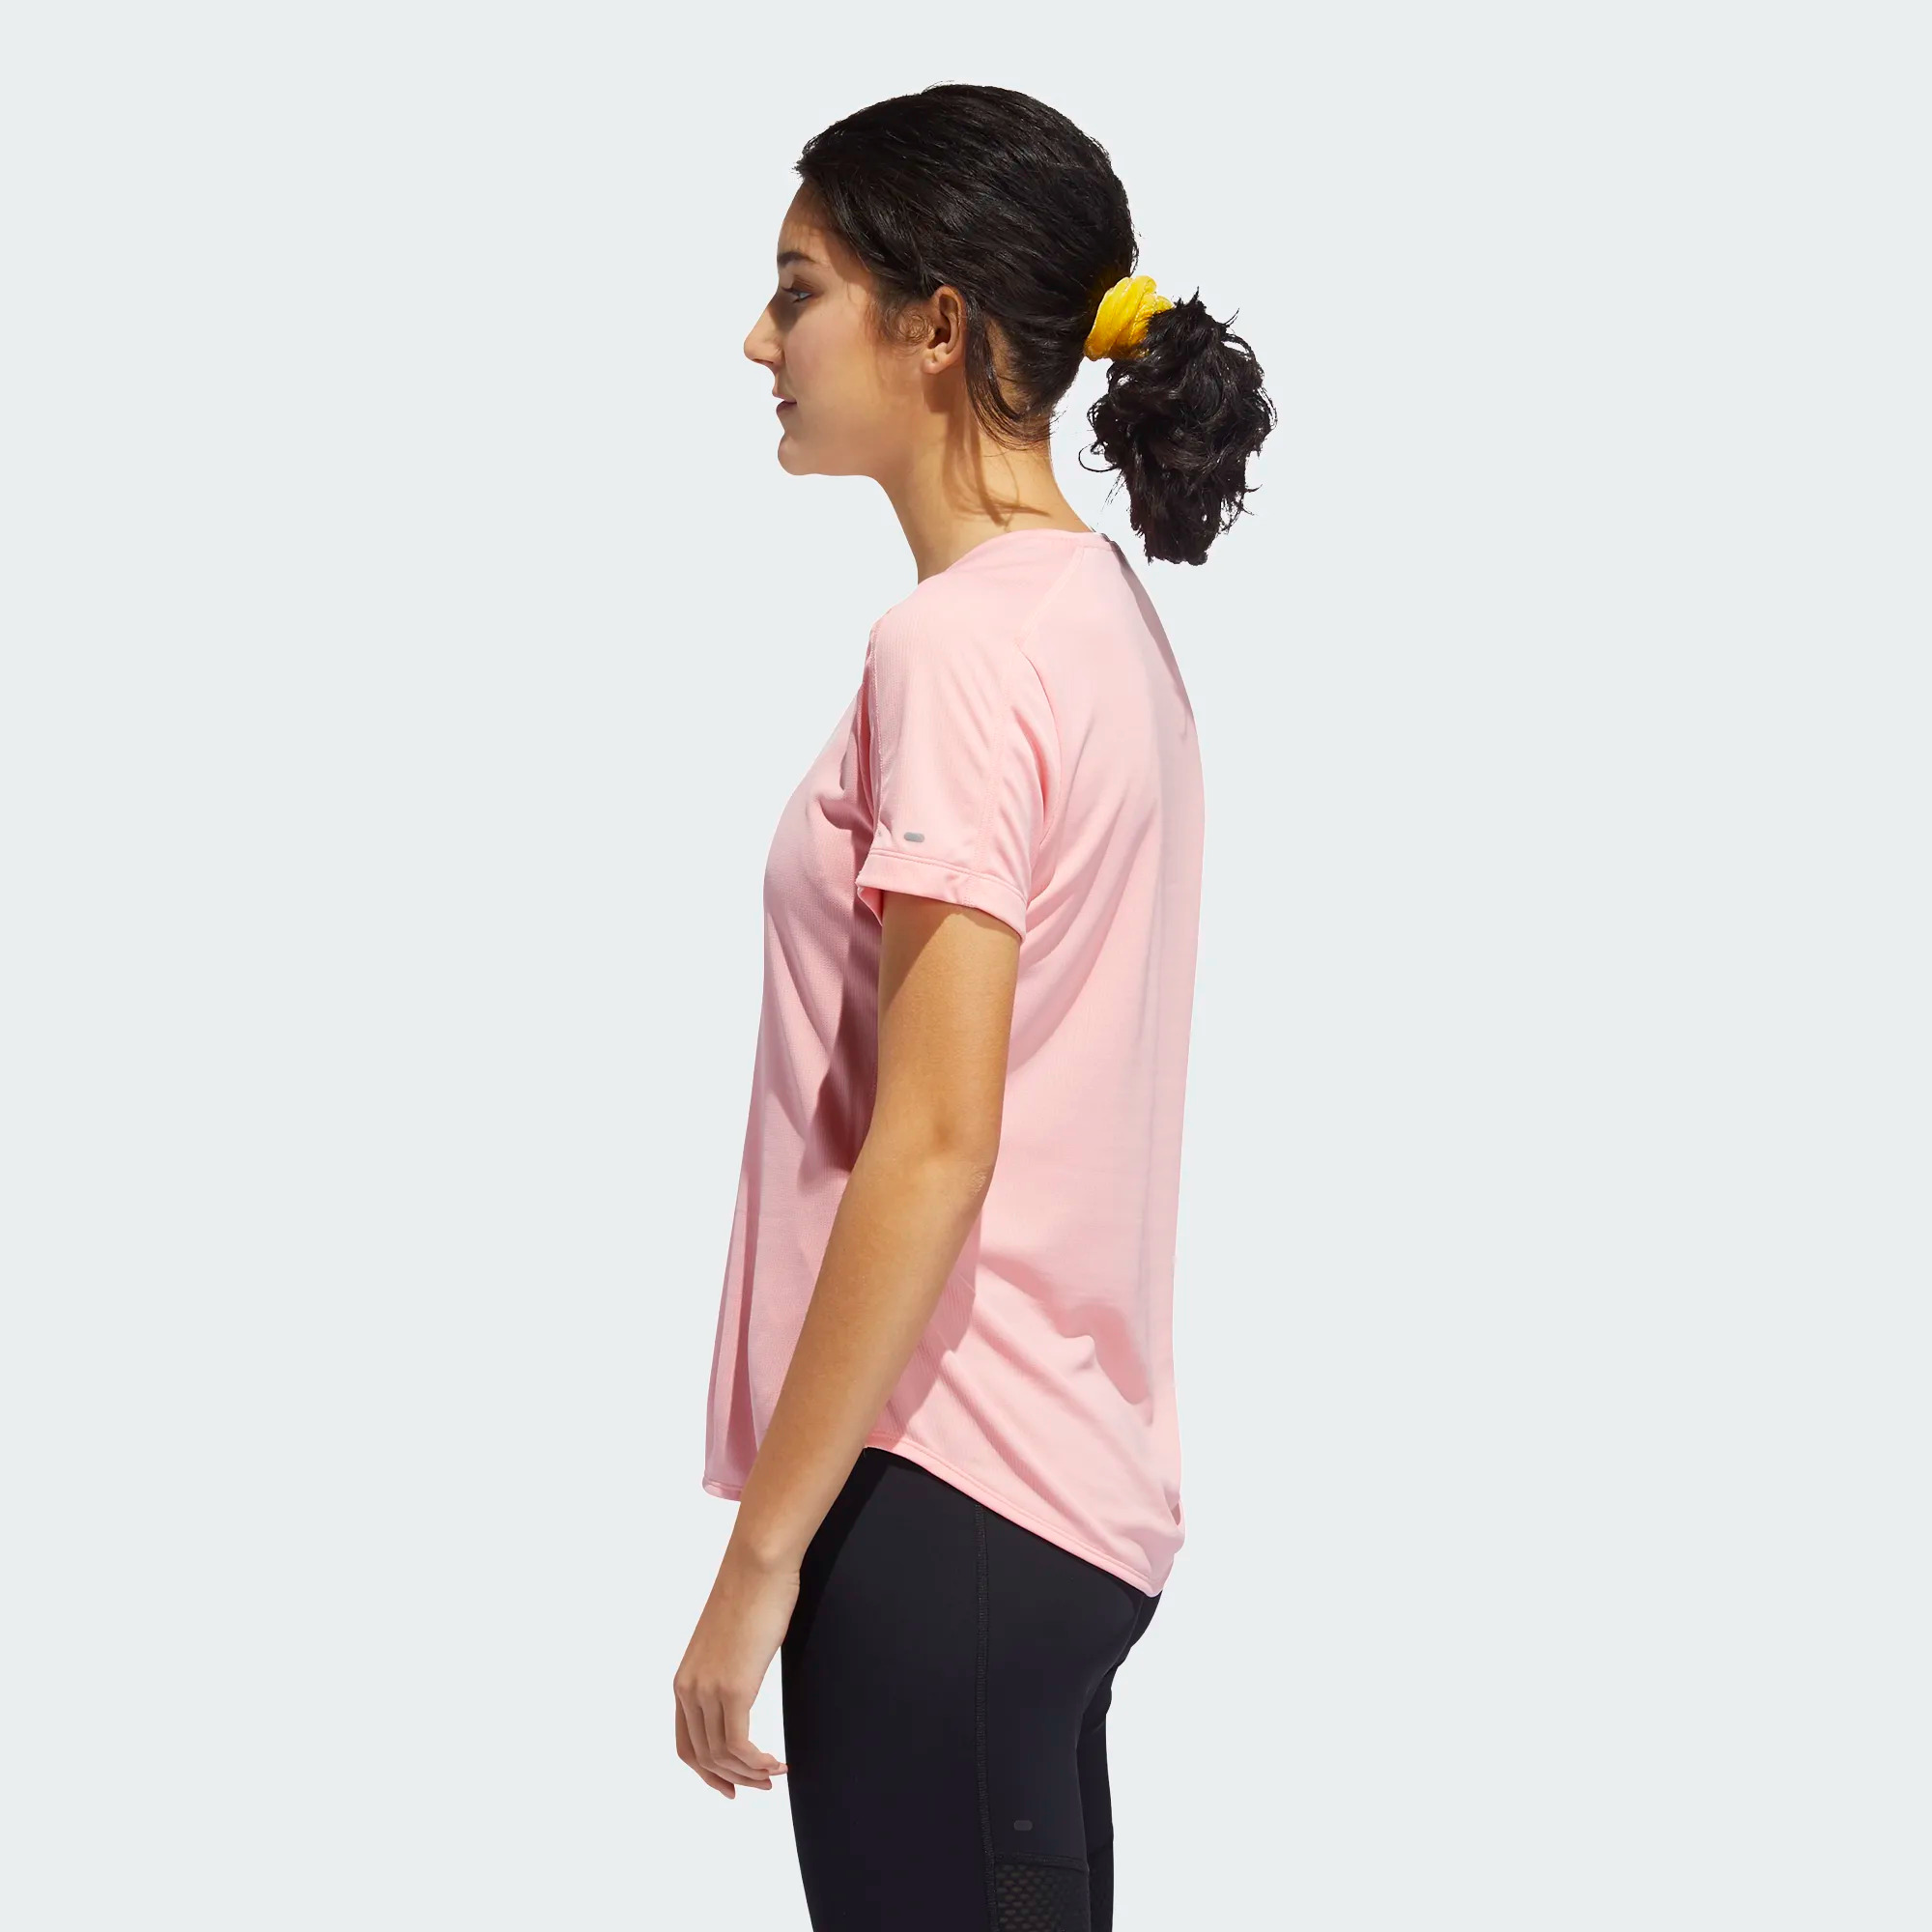 Adidas "RUN IT" 3-Streifen Laufshirt für Damen